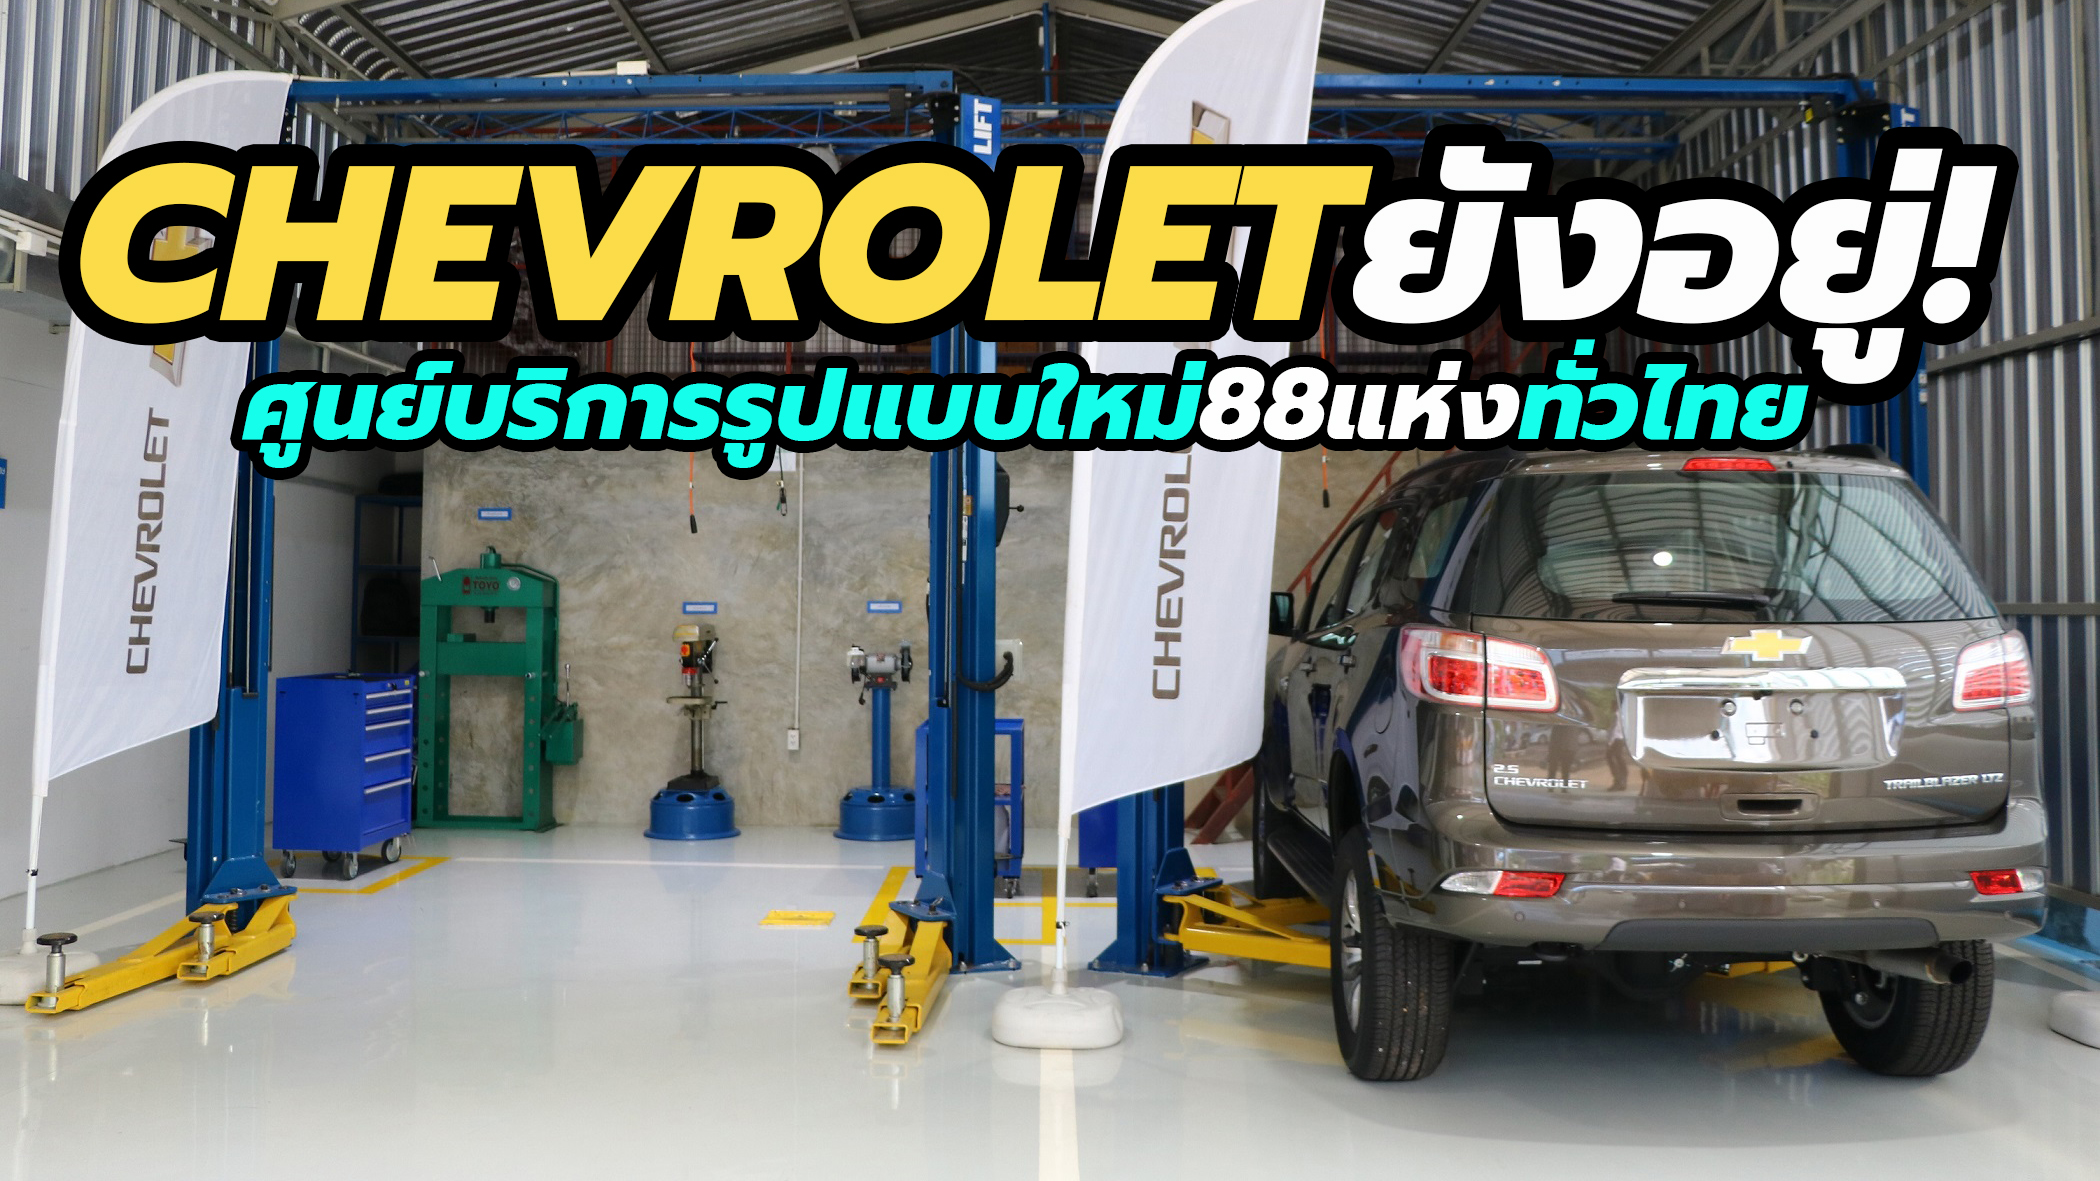 Chevrolet Thailand 2021